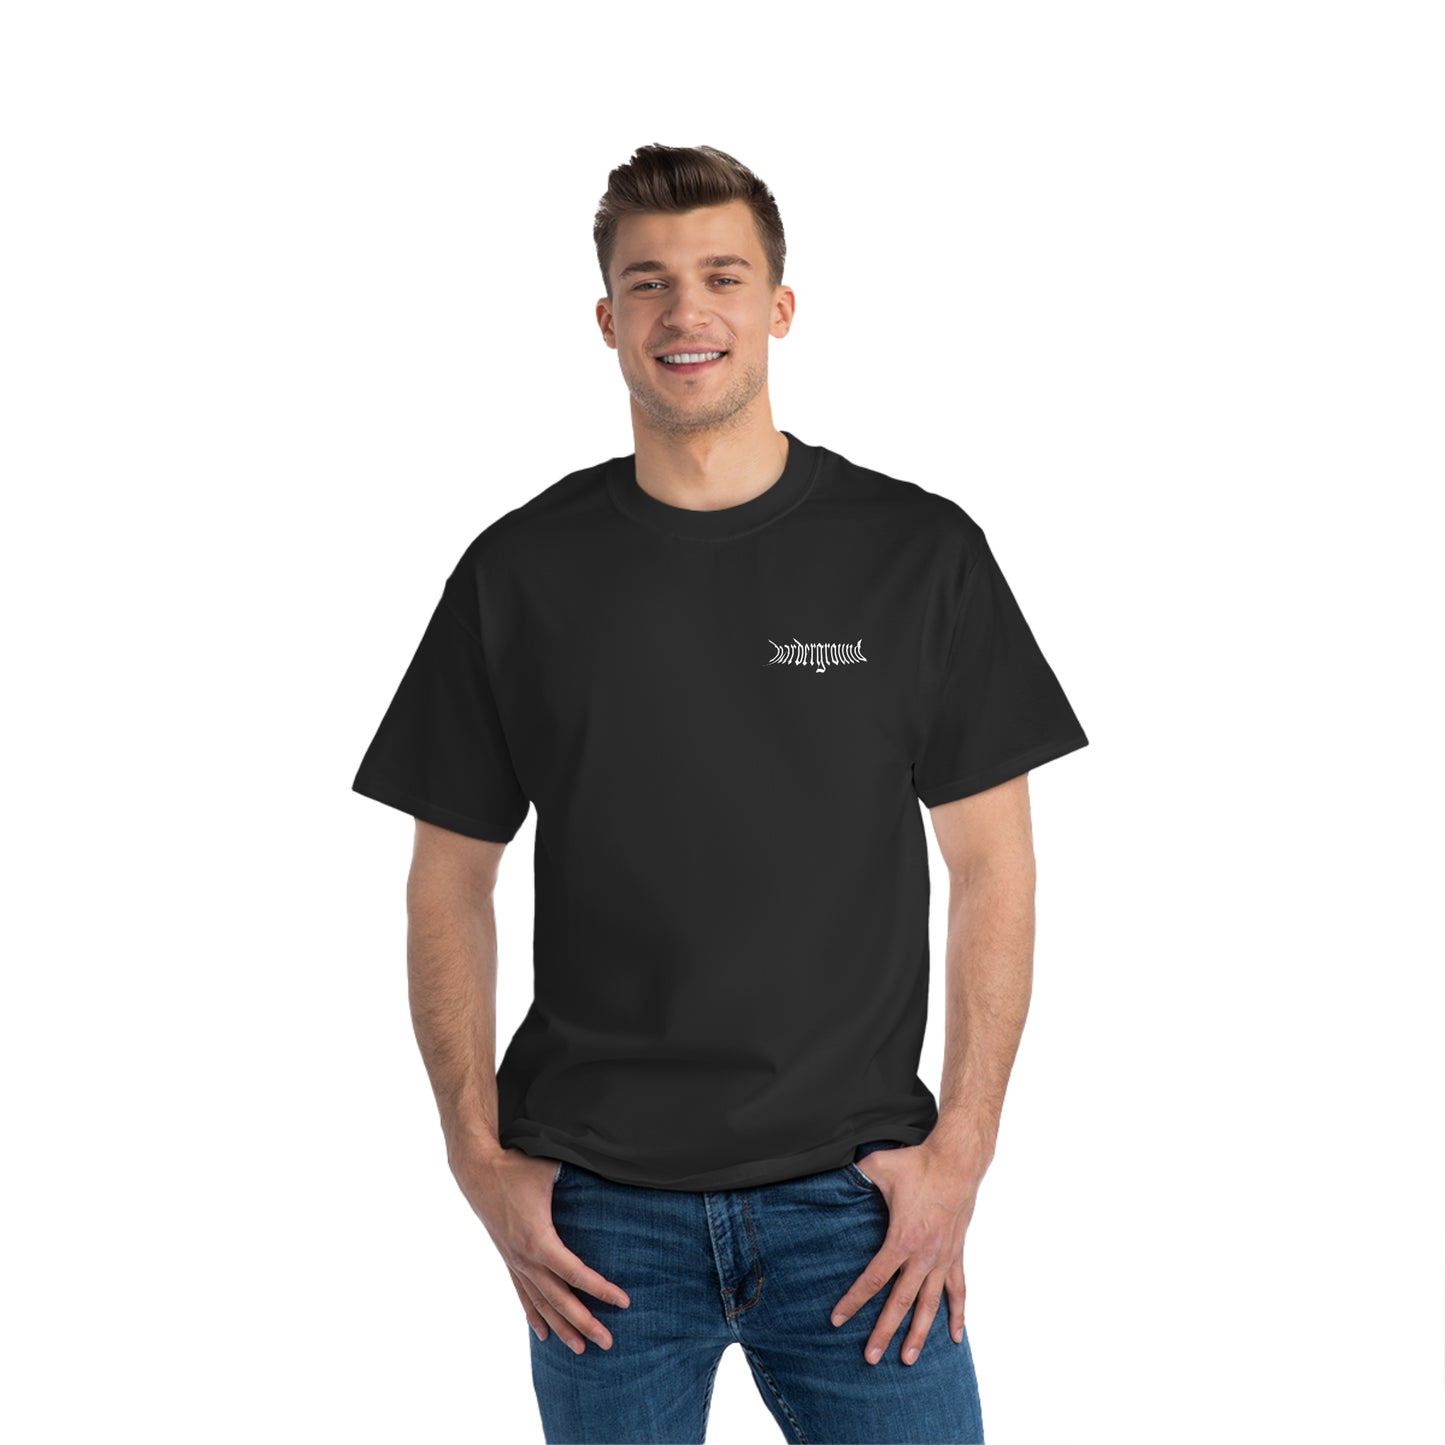 HARDERGROUND - Front &amp; back logo - Beefy-T® Short-Sleeve T-Shirt